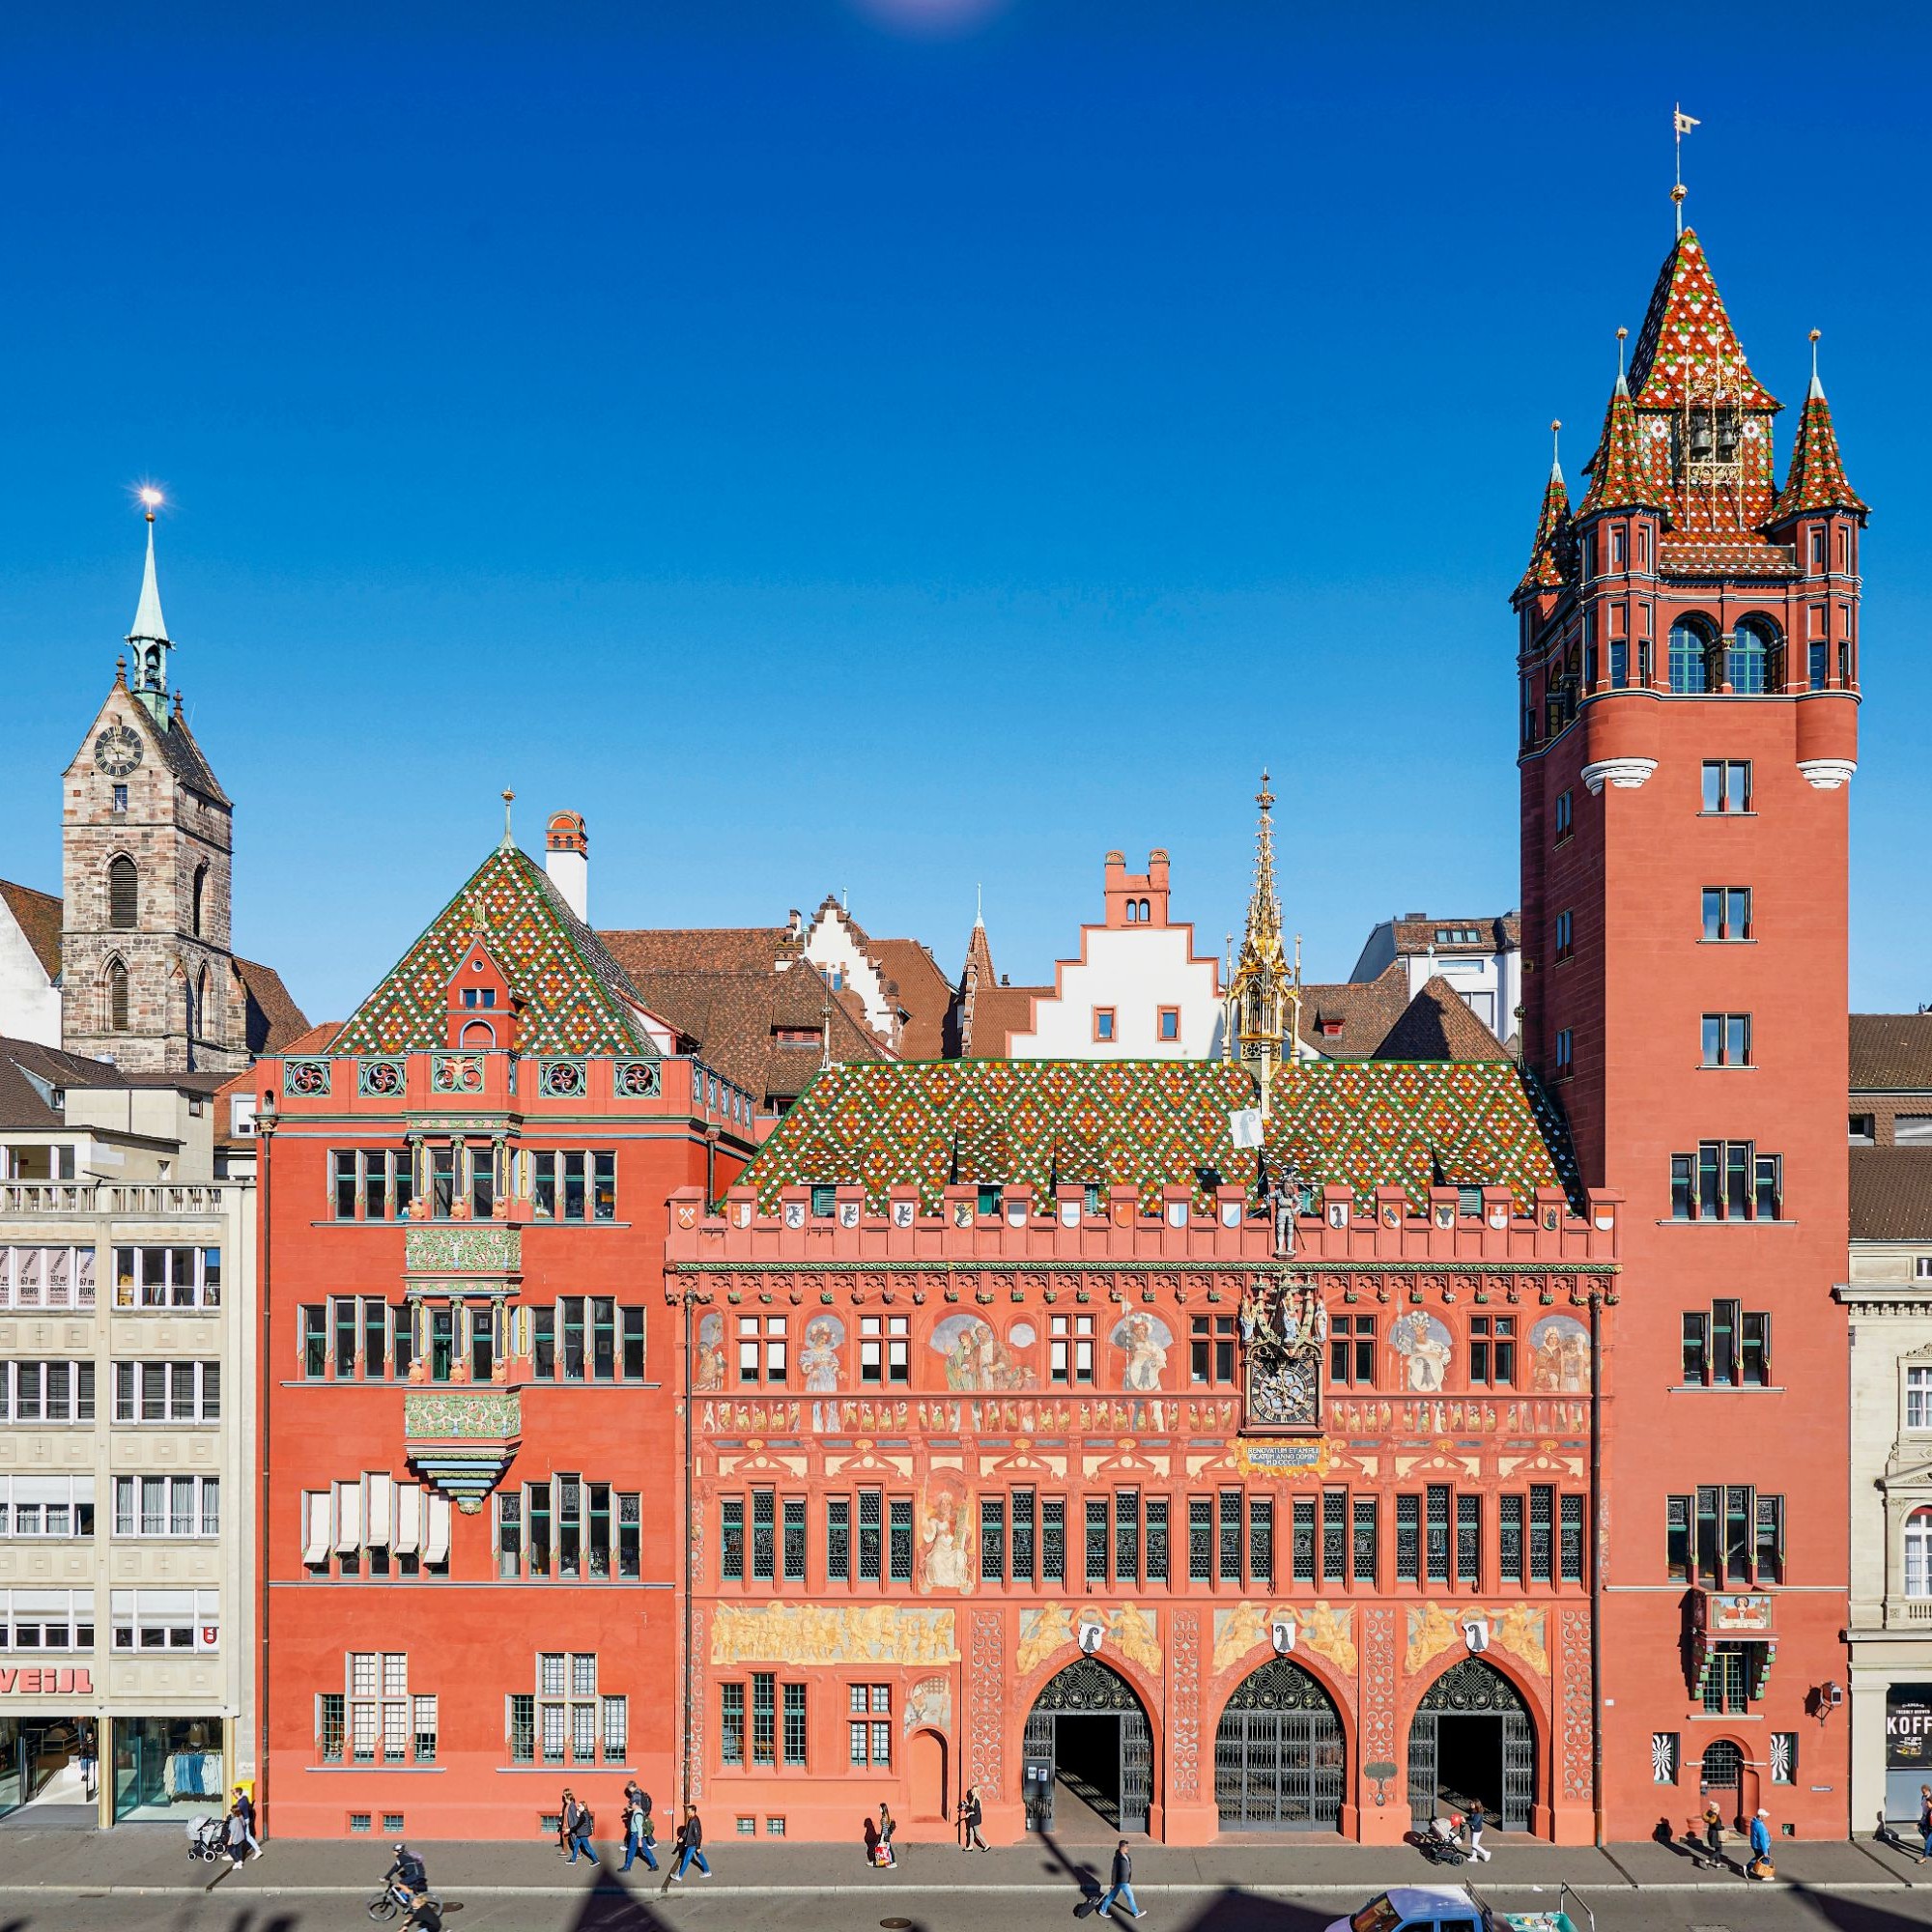 Das Basler Rathaus zeigt deutlich ablesbar drei Bauphasen. 1504 – 14 entstand der ursprüngliche Teil mit den Arkaden. 1606 – 08 wurde die Vordere Kanzlei gebaut, die sich links nahtlos an die Arkaden anschliesst. 1900 – 01 folgten die Neue Kanzlei ganz li